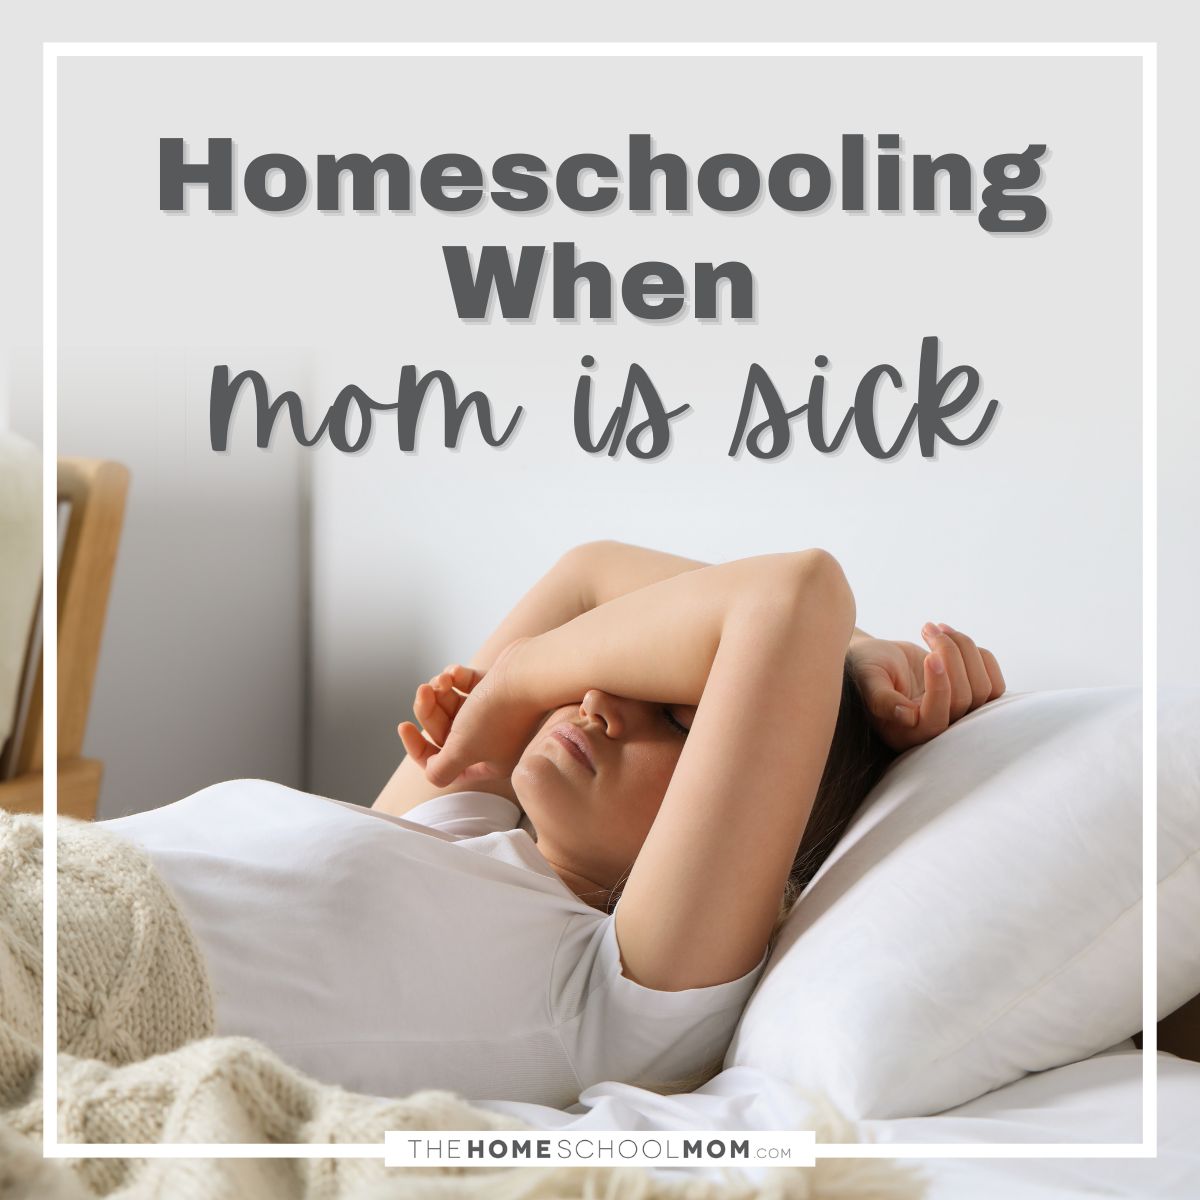 Homeschooling when mom is sick.